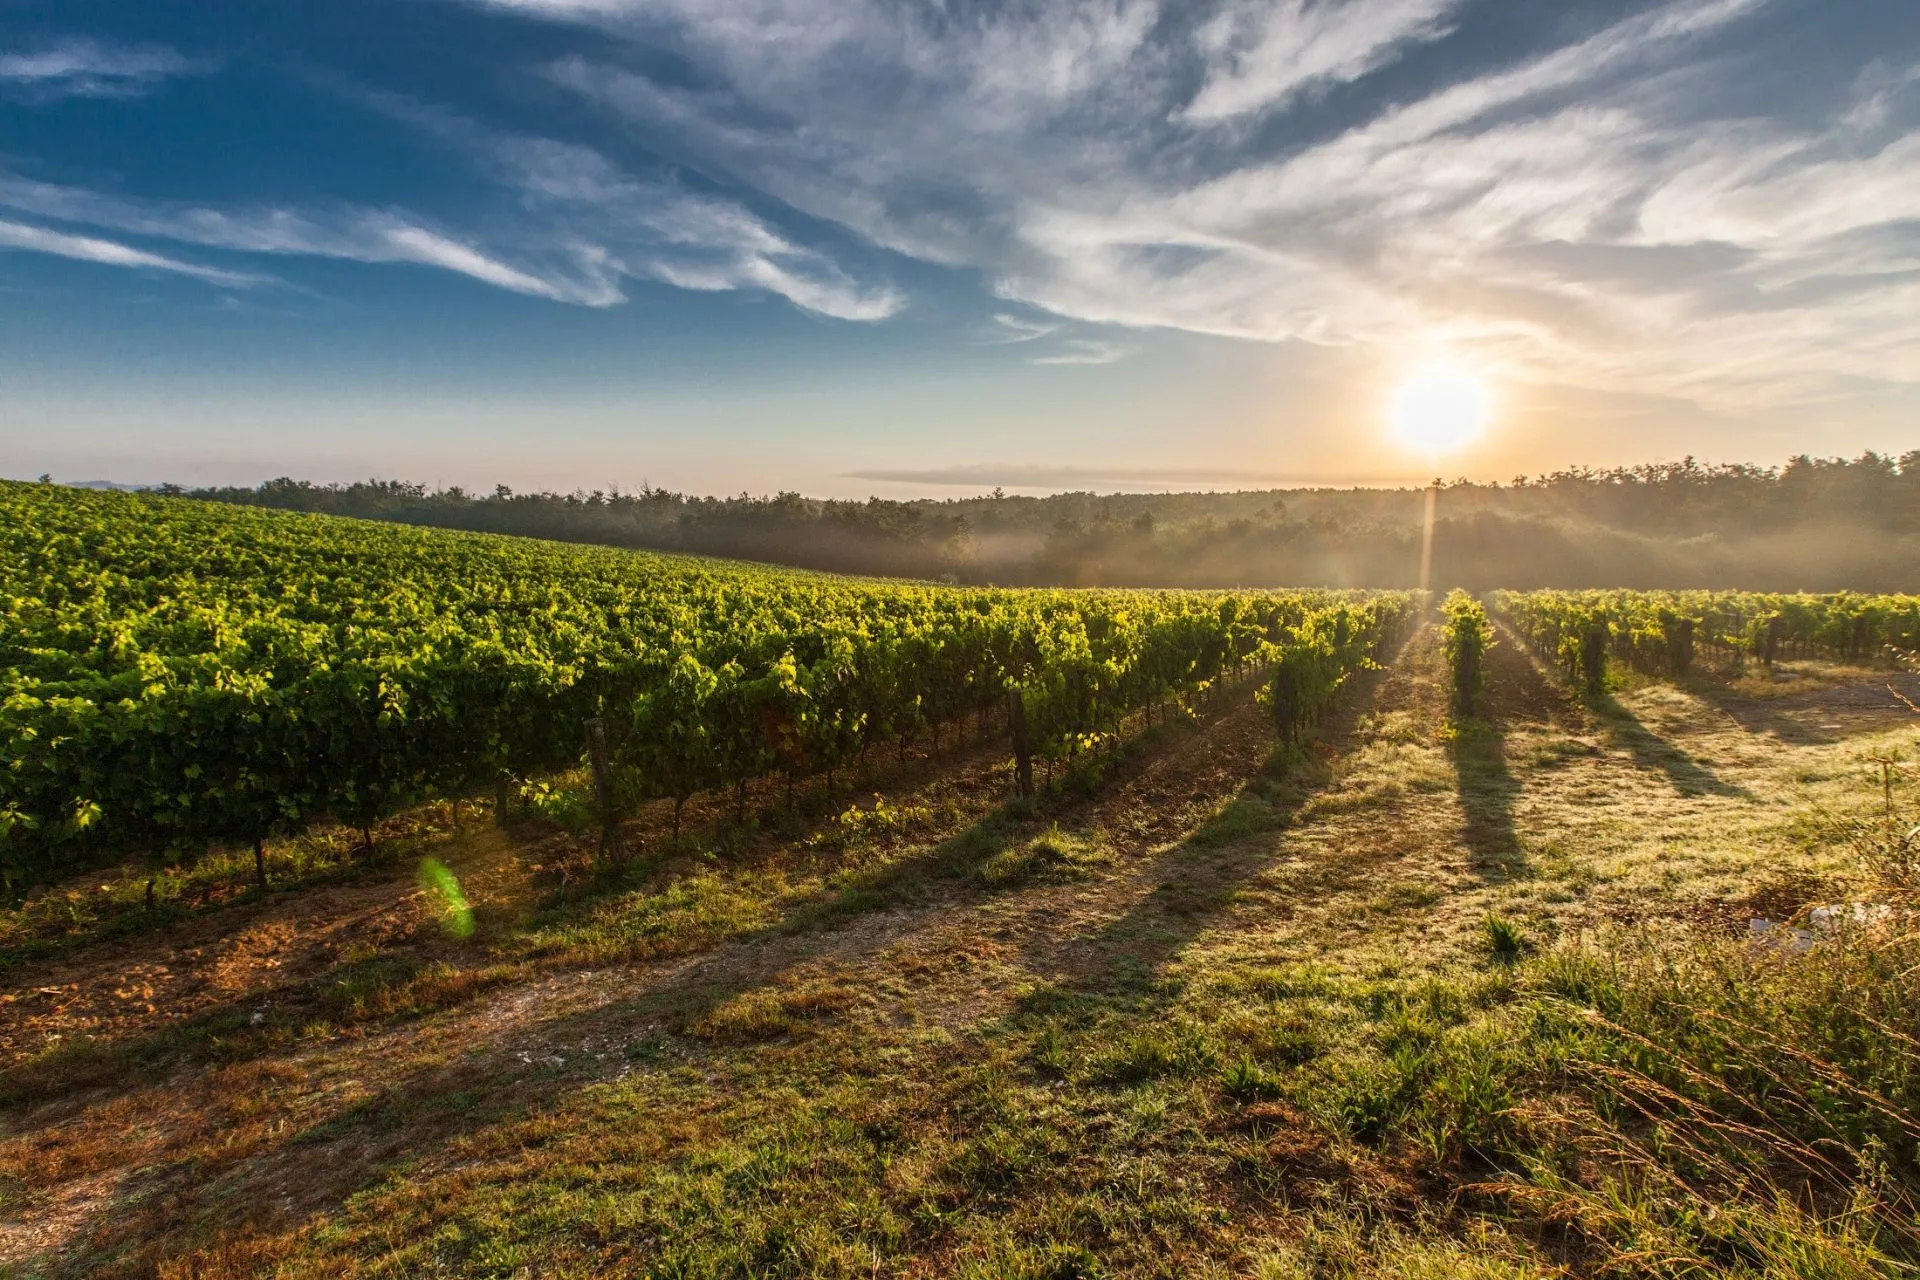 Solnedgång i slovenska vingårdar skalade